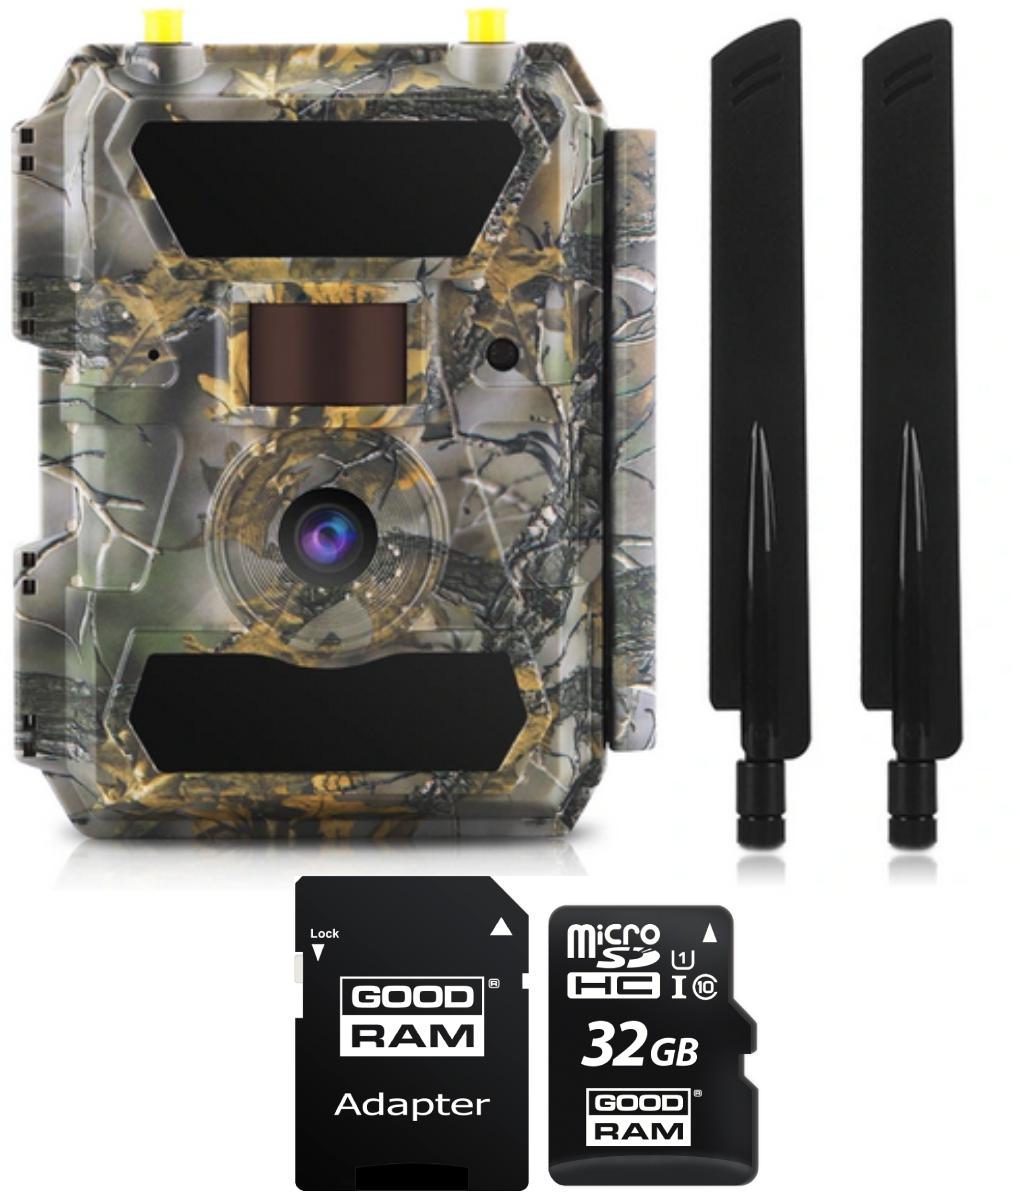 Zestaw kamera leśna (fotopułapka) 4.0CG 4G LTE GPS z językiem polskim + karta pamięci microSD GOODRAM CL10 32GB - najważniejsze cechy: